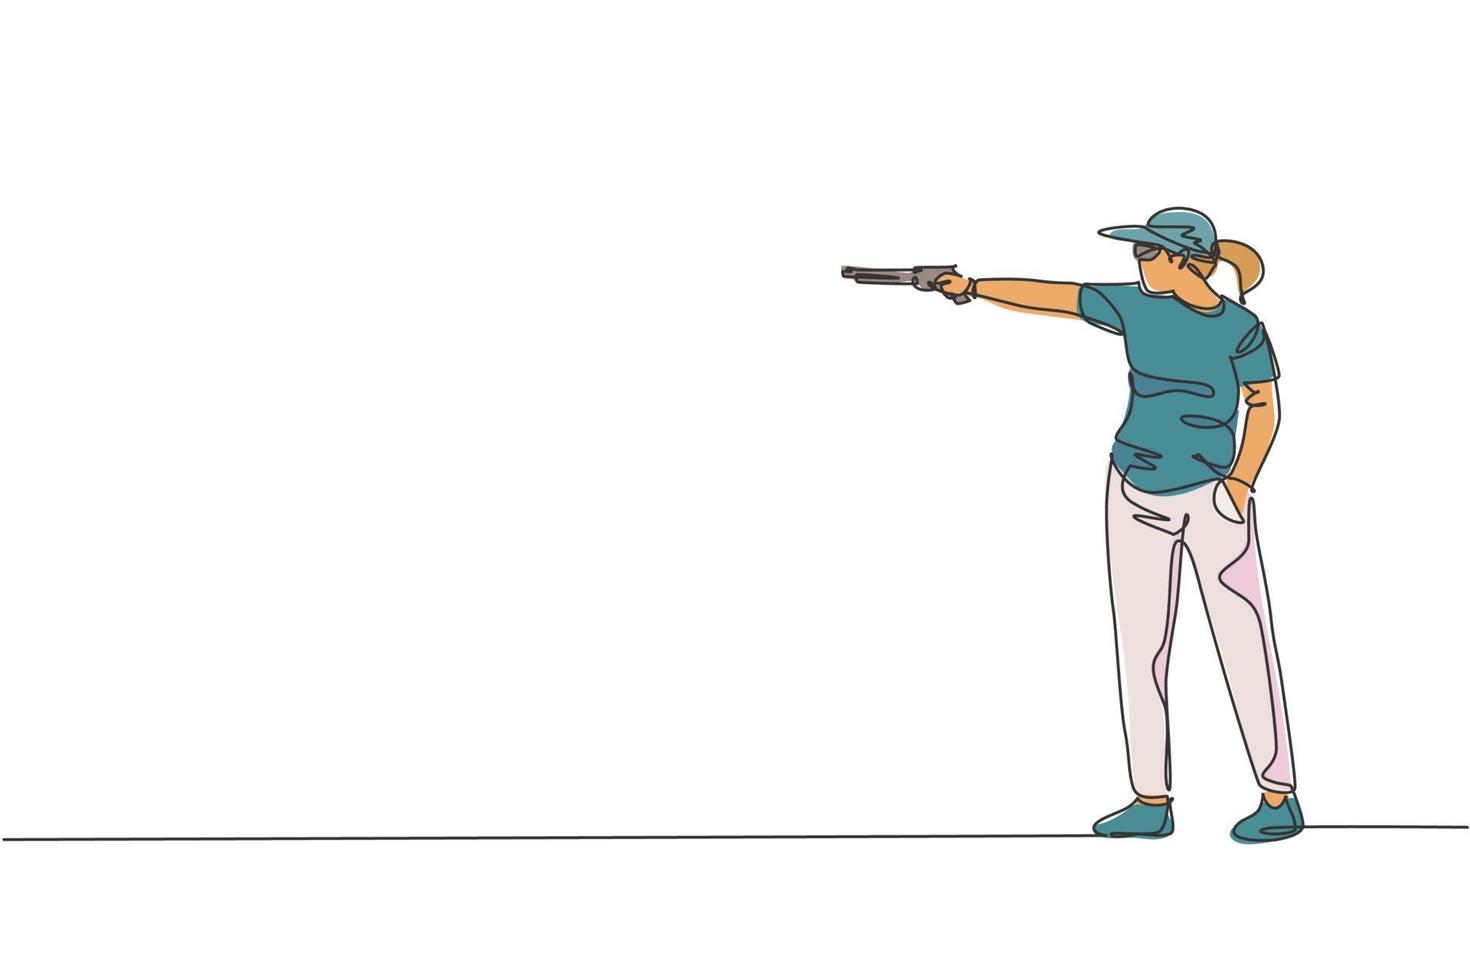 dibujo de una sola línea continua de una joven atleta tiradora sosteniendo un arma y entrenando para apuntar al tiro táctico. concepto de entrenamiento deportivo de tiro. ilustración de vector de diseño de dibujo de una línea de moda